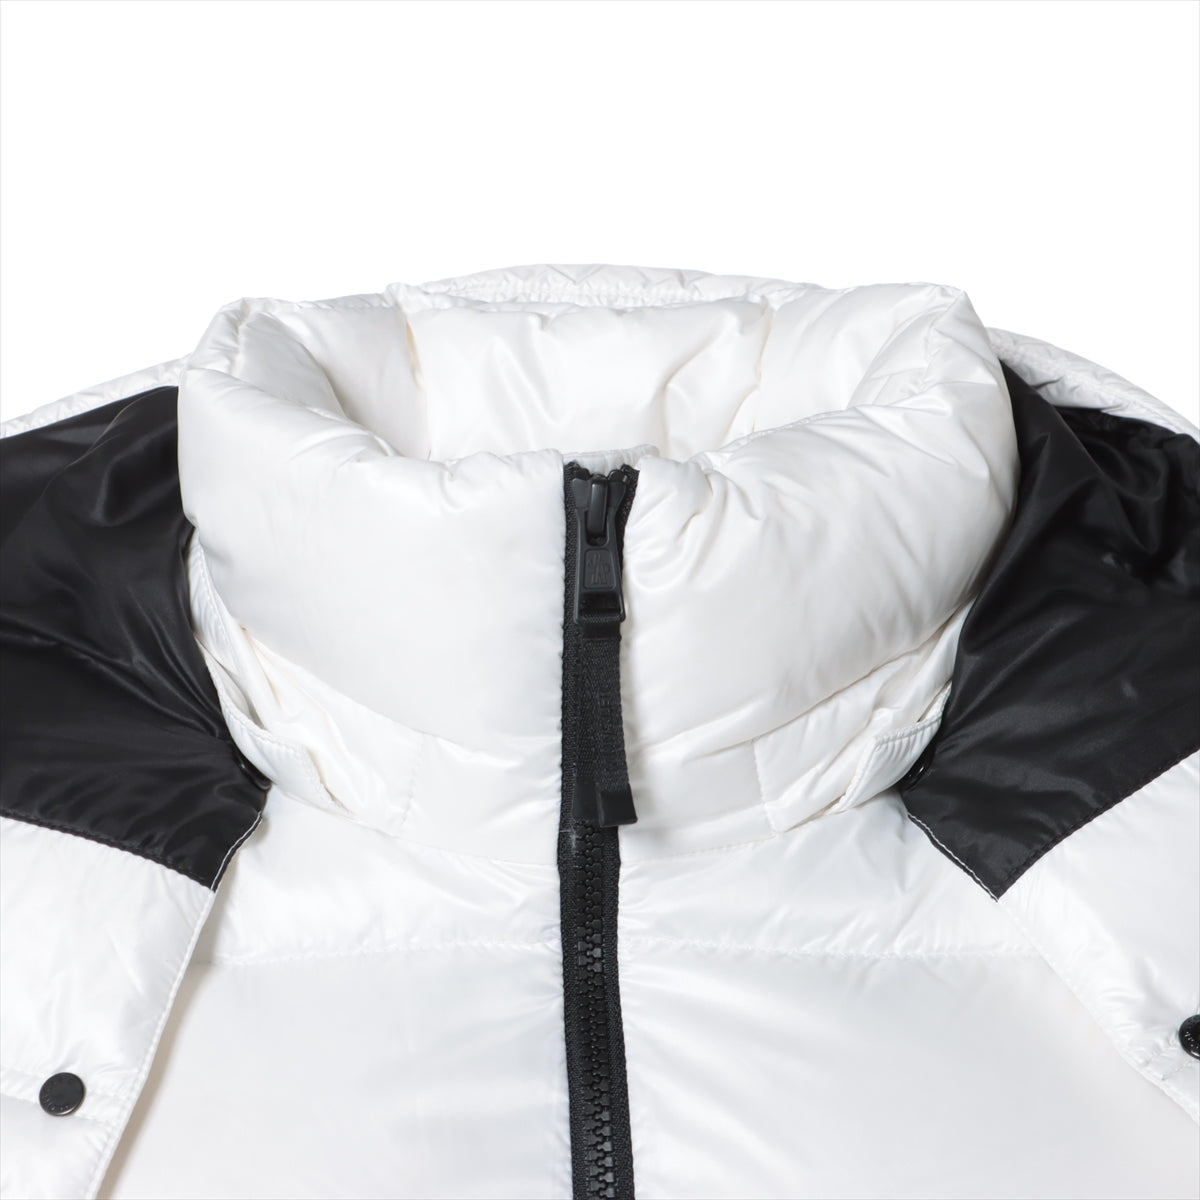 Moncler Genius Fragment 23 years Nylon Down vest 1 Men's White  MARSH GILET Hiroshi Fujiwara